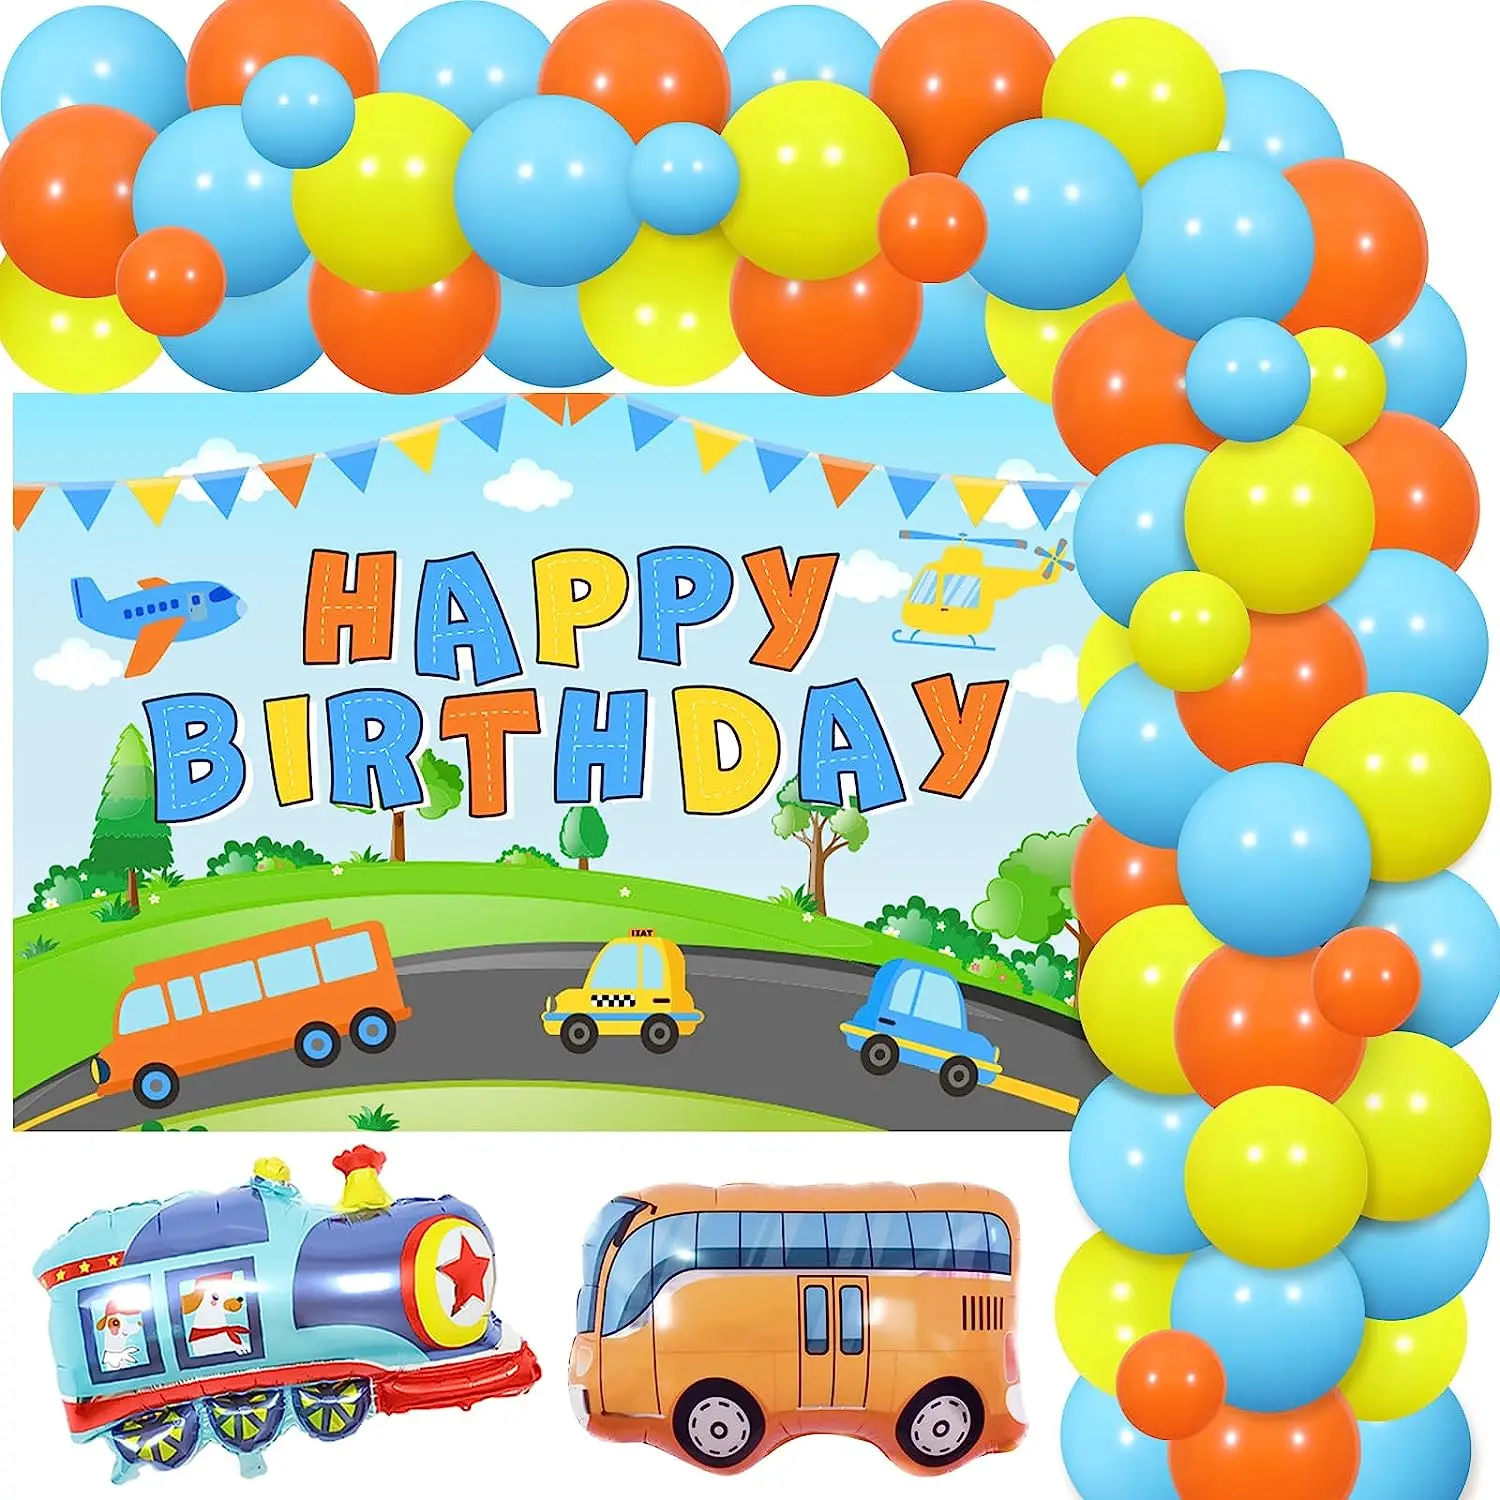 Транспорт Fangleland, украшения на день рождения для мальчиков, тематическая вечеринка в виде транспортного средства, воздушные шары, комплект арки с гирляндой и фоном